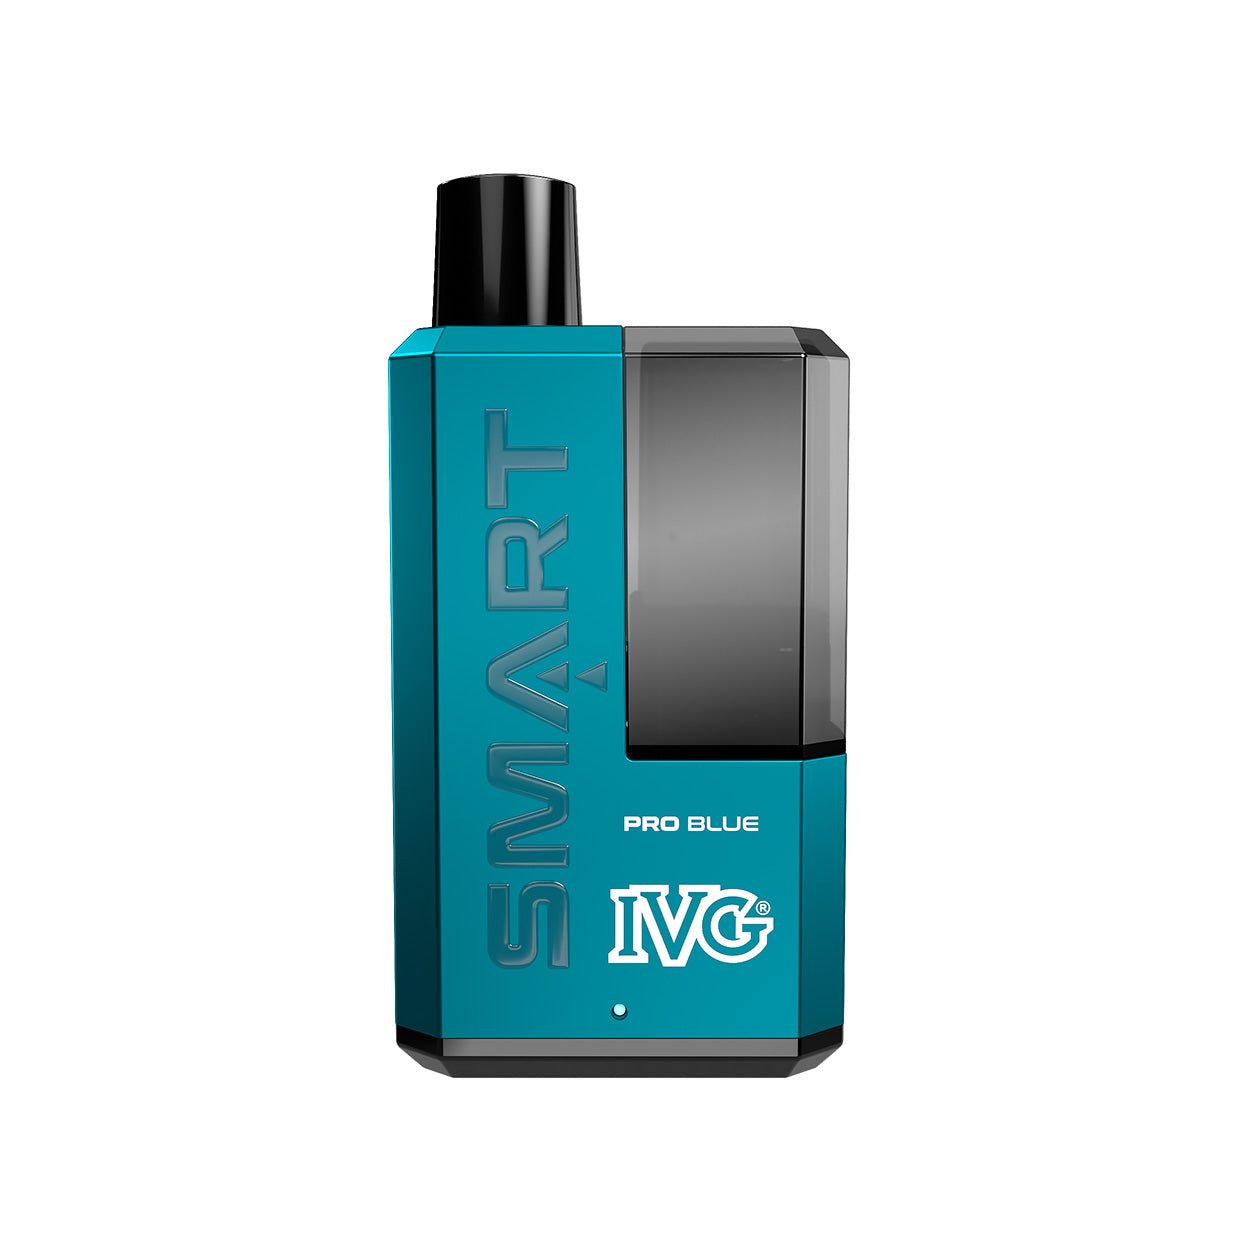 IVG Smart 5500 - Pro Blue - PJW Vapes | UK Leading Vape Wholesaler